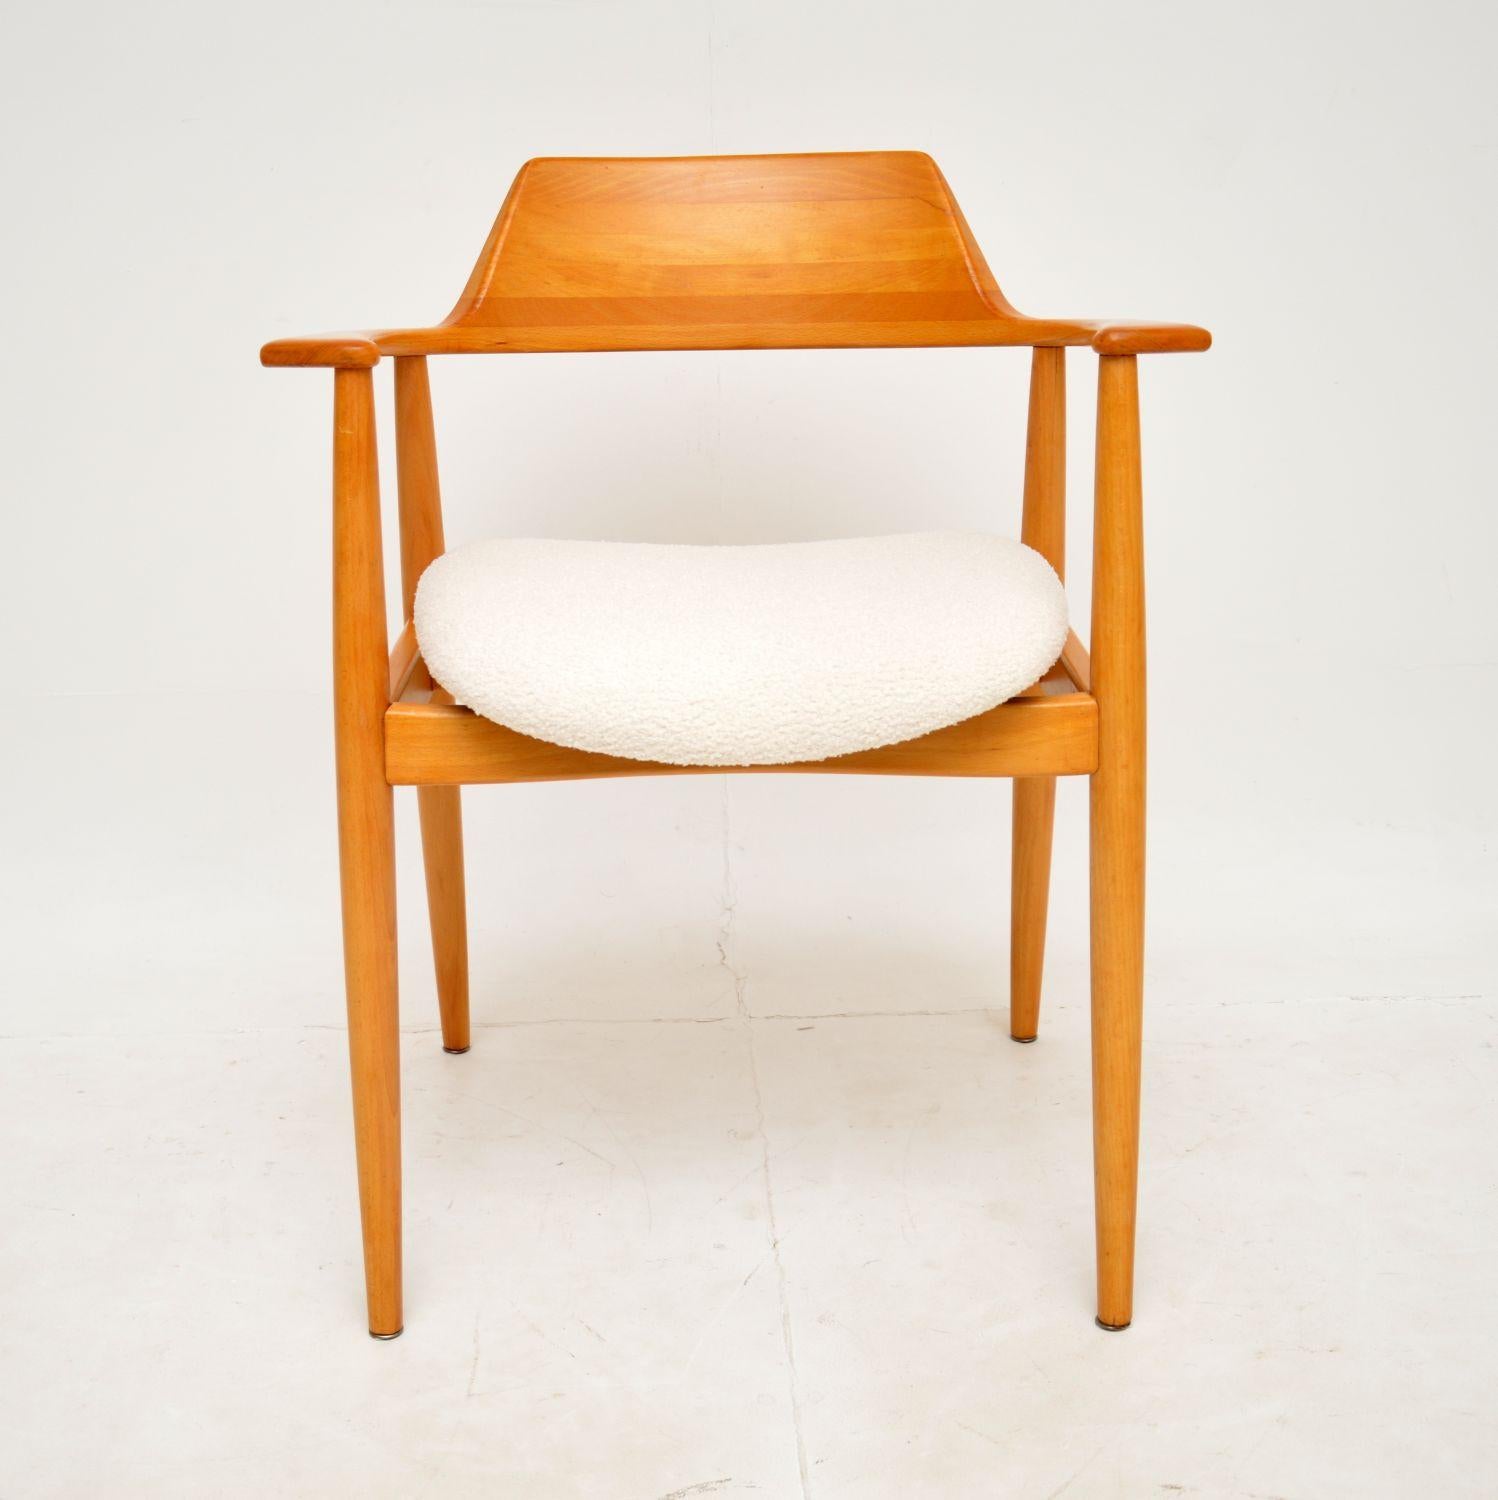 Un fauteuil de sculpteur extrêmement élégant et bien fait. Il a été fabriqué au Danemark et date des années 1960.

Il est d'une qualité étonnante et est fabriqué en bois de cerisier massif. Avec un dossier et des accoudoirs joliment incurvés, il